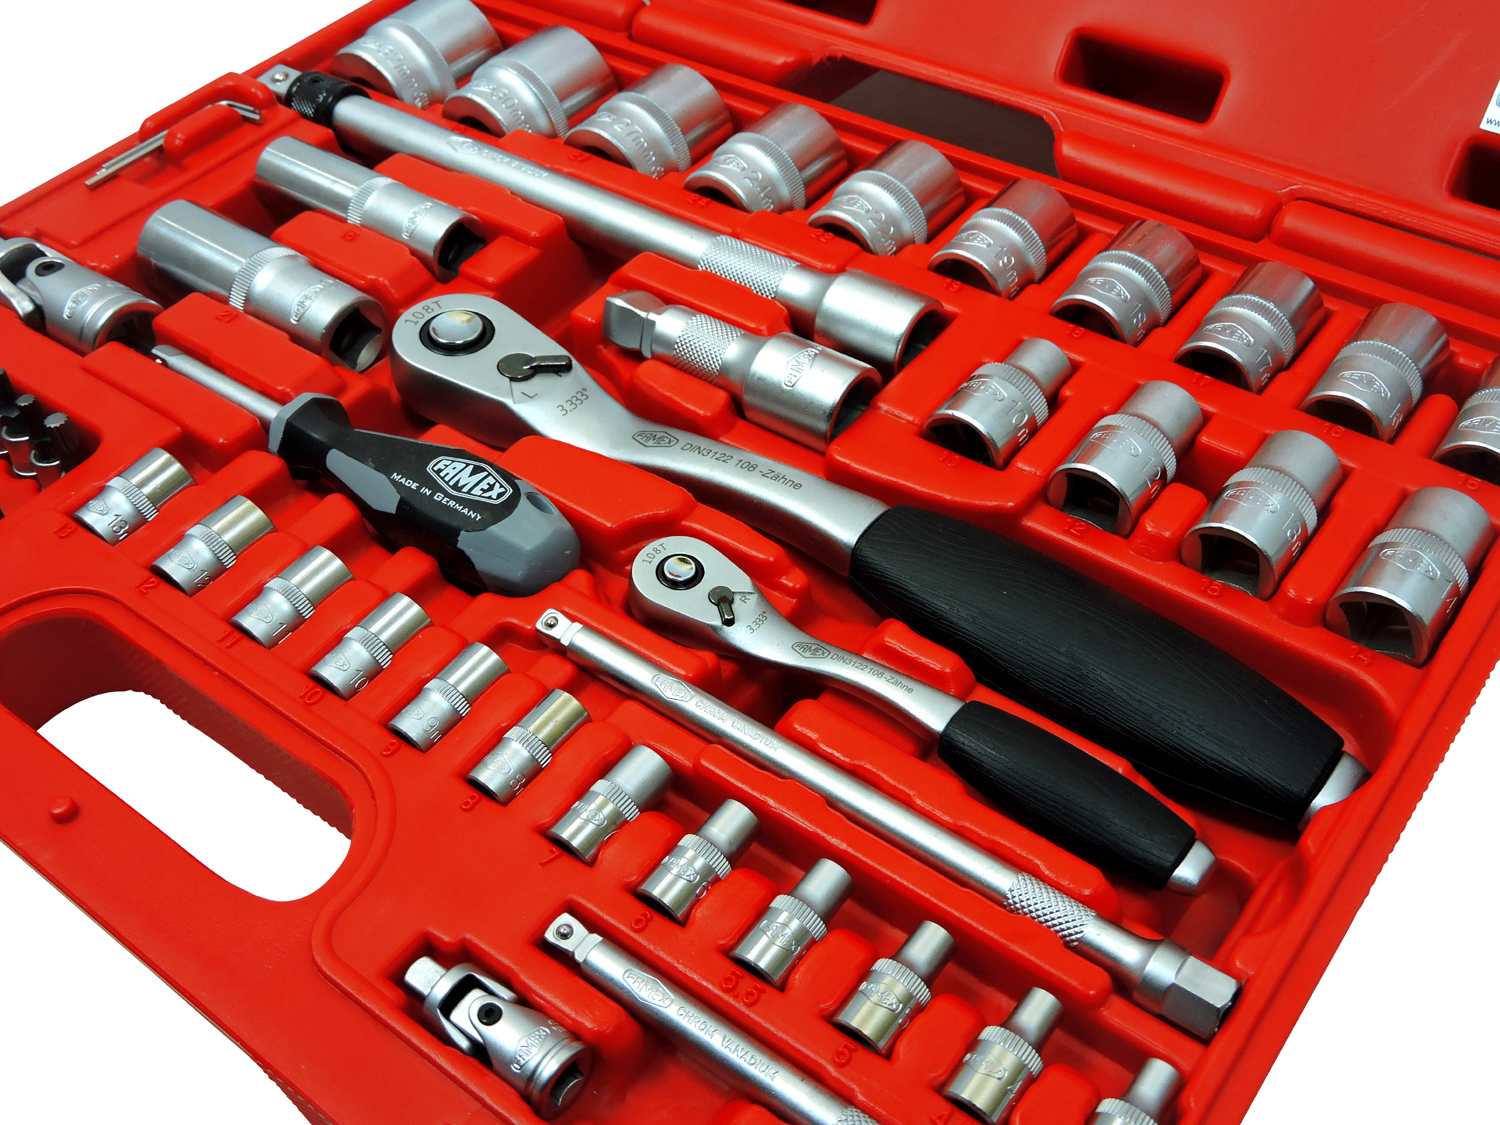 FAMEX mit Steckschlüsselsatz Werkzeugkoffer Qualität, günstig Komplettset High-End kaufen online 728-14 Werkzeuge - 66-teiligem